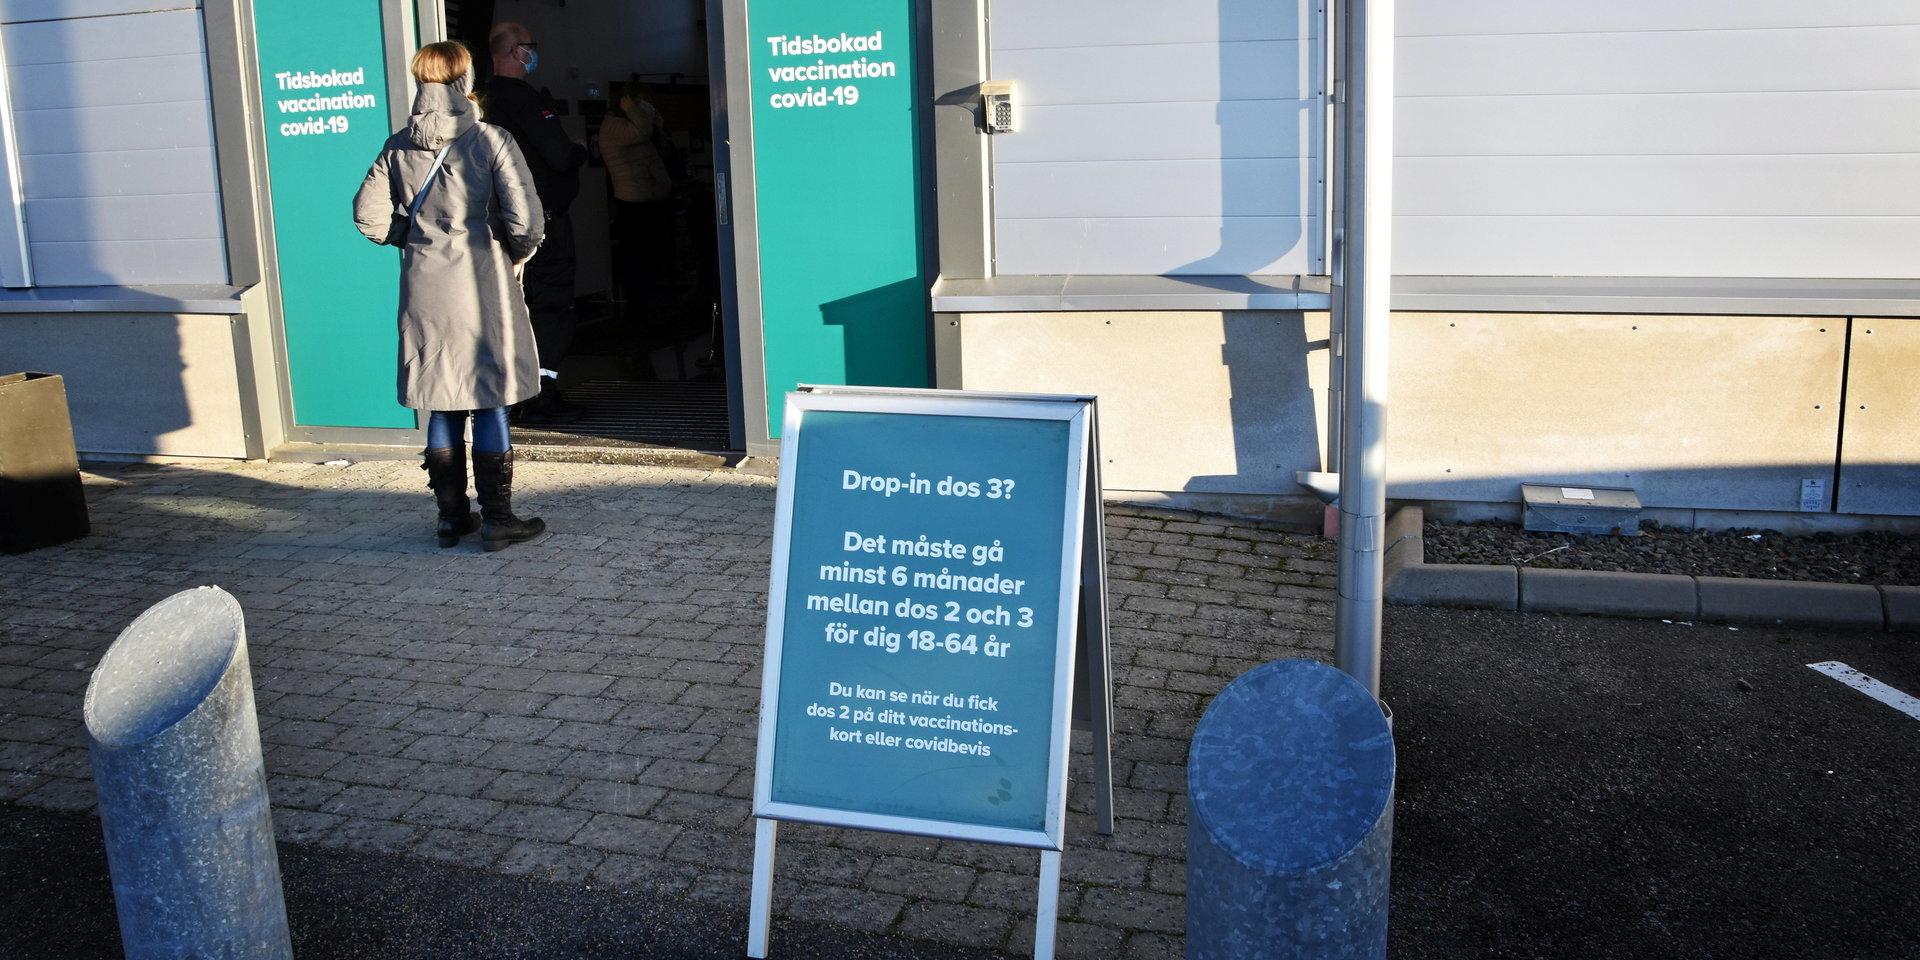 Vaccinationscentral för covid-19 på Varberg Nord.